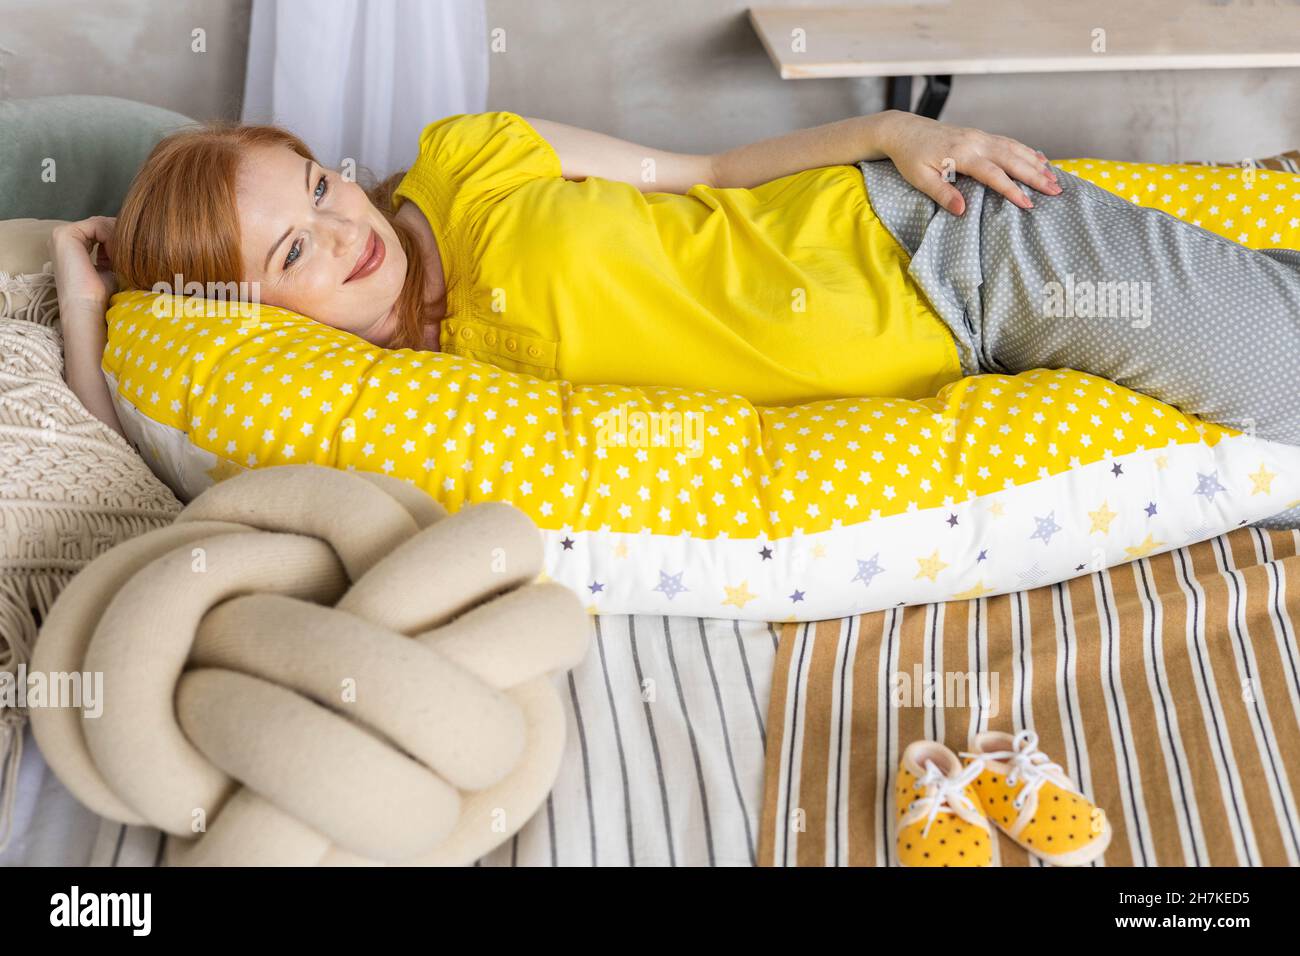 Draufsicht glückliche zukünftige Mutter, die auf einem bequemen Bett und  einem Kissen liegt, um schwanger zu entspannen Stockfotografie - Alamy